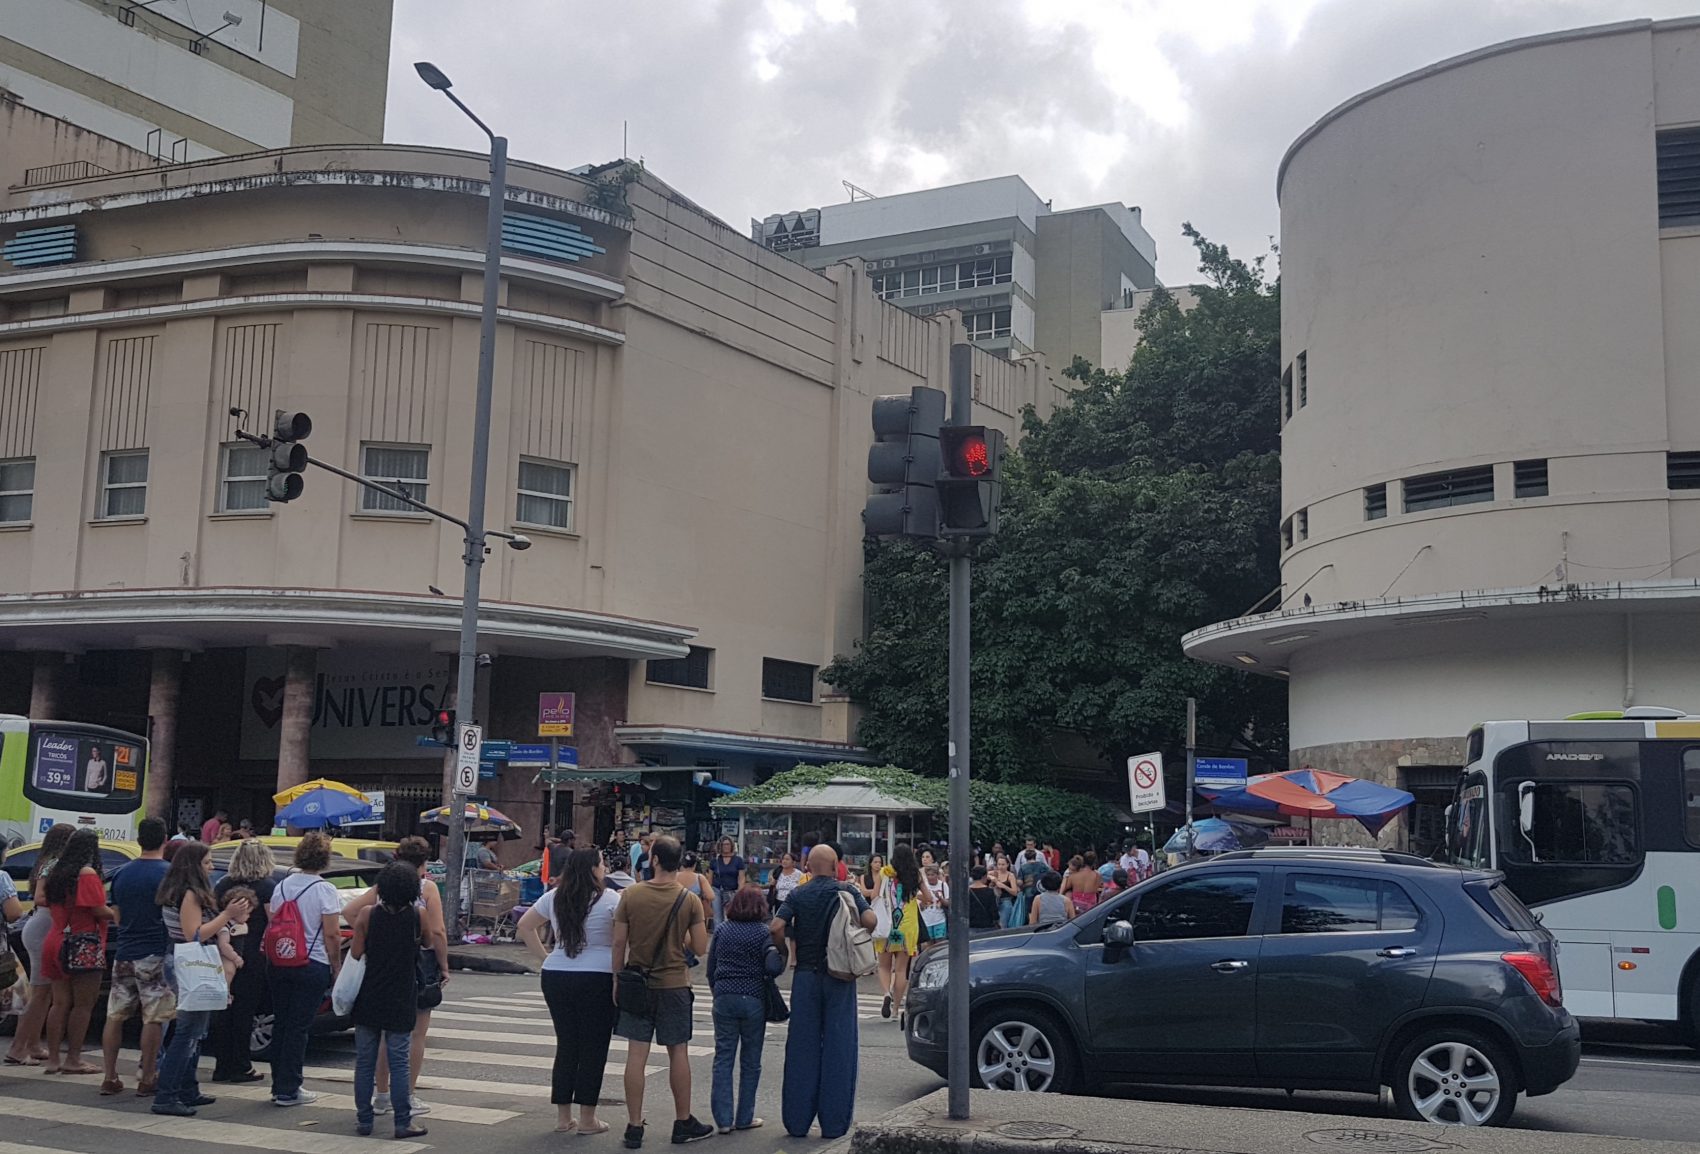 Igreja Universal ocupa prédio do antigo Cinema Carioca, na Tijuca: ao lado, uma drogaria da rede Venancio; na outra esquina, mais uma farmácia, de uma empresa concorrente (Foto: Oscar Valporto - 08/07/2019)